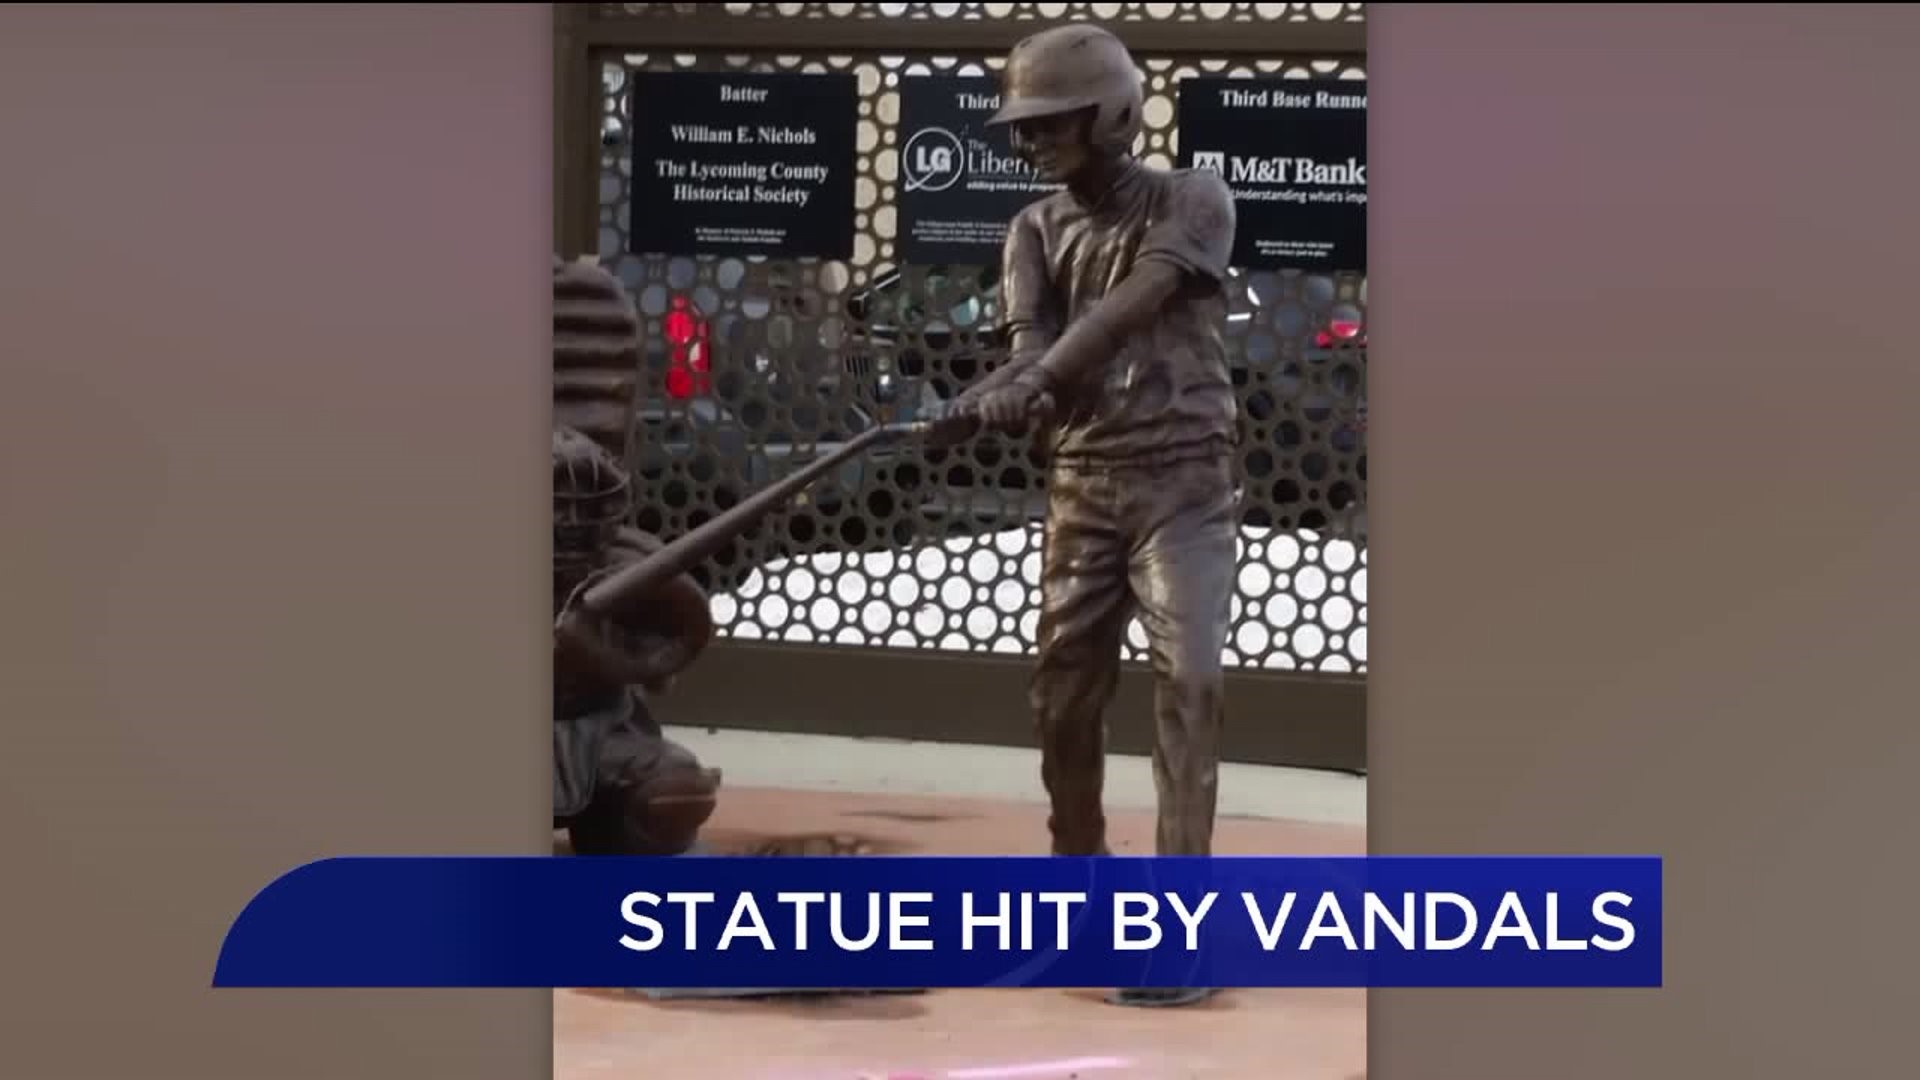 Little League Statue Hit by Vandals